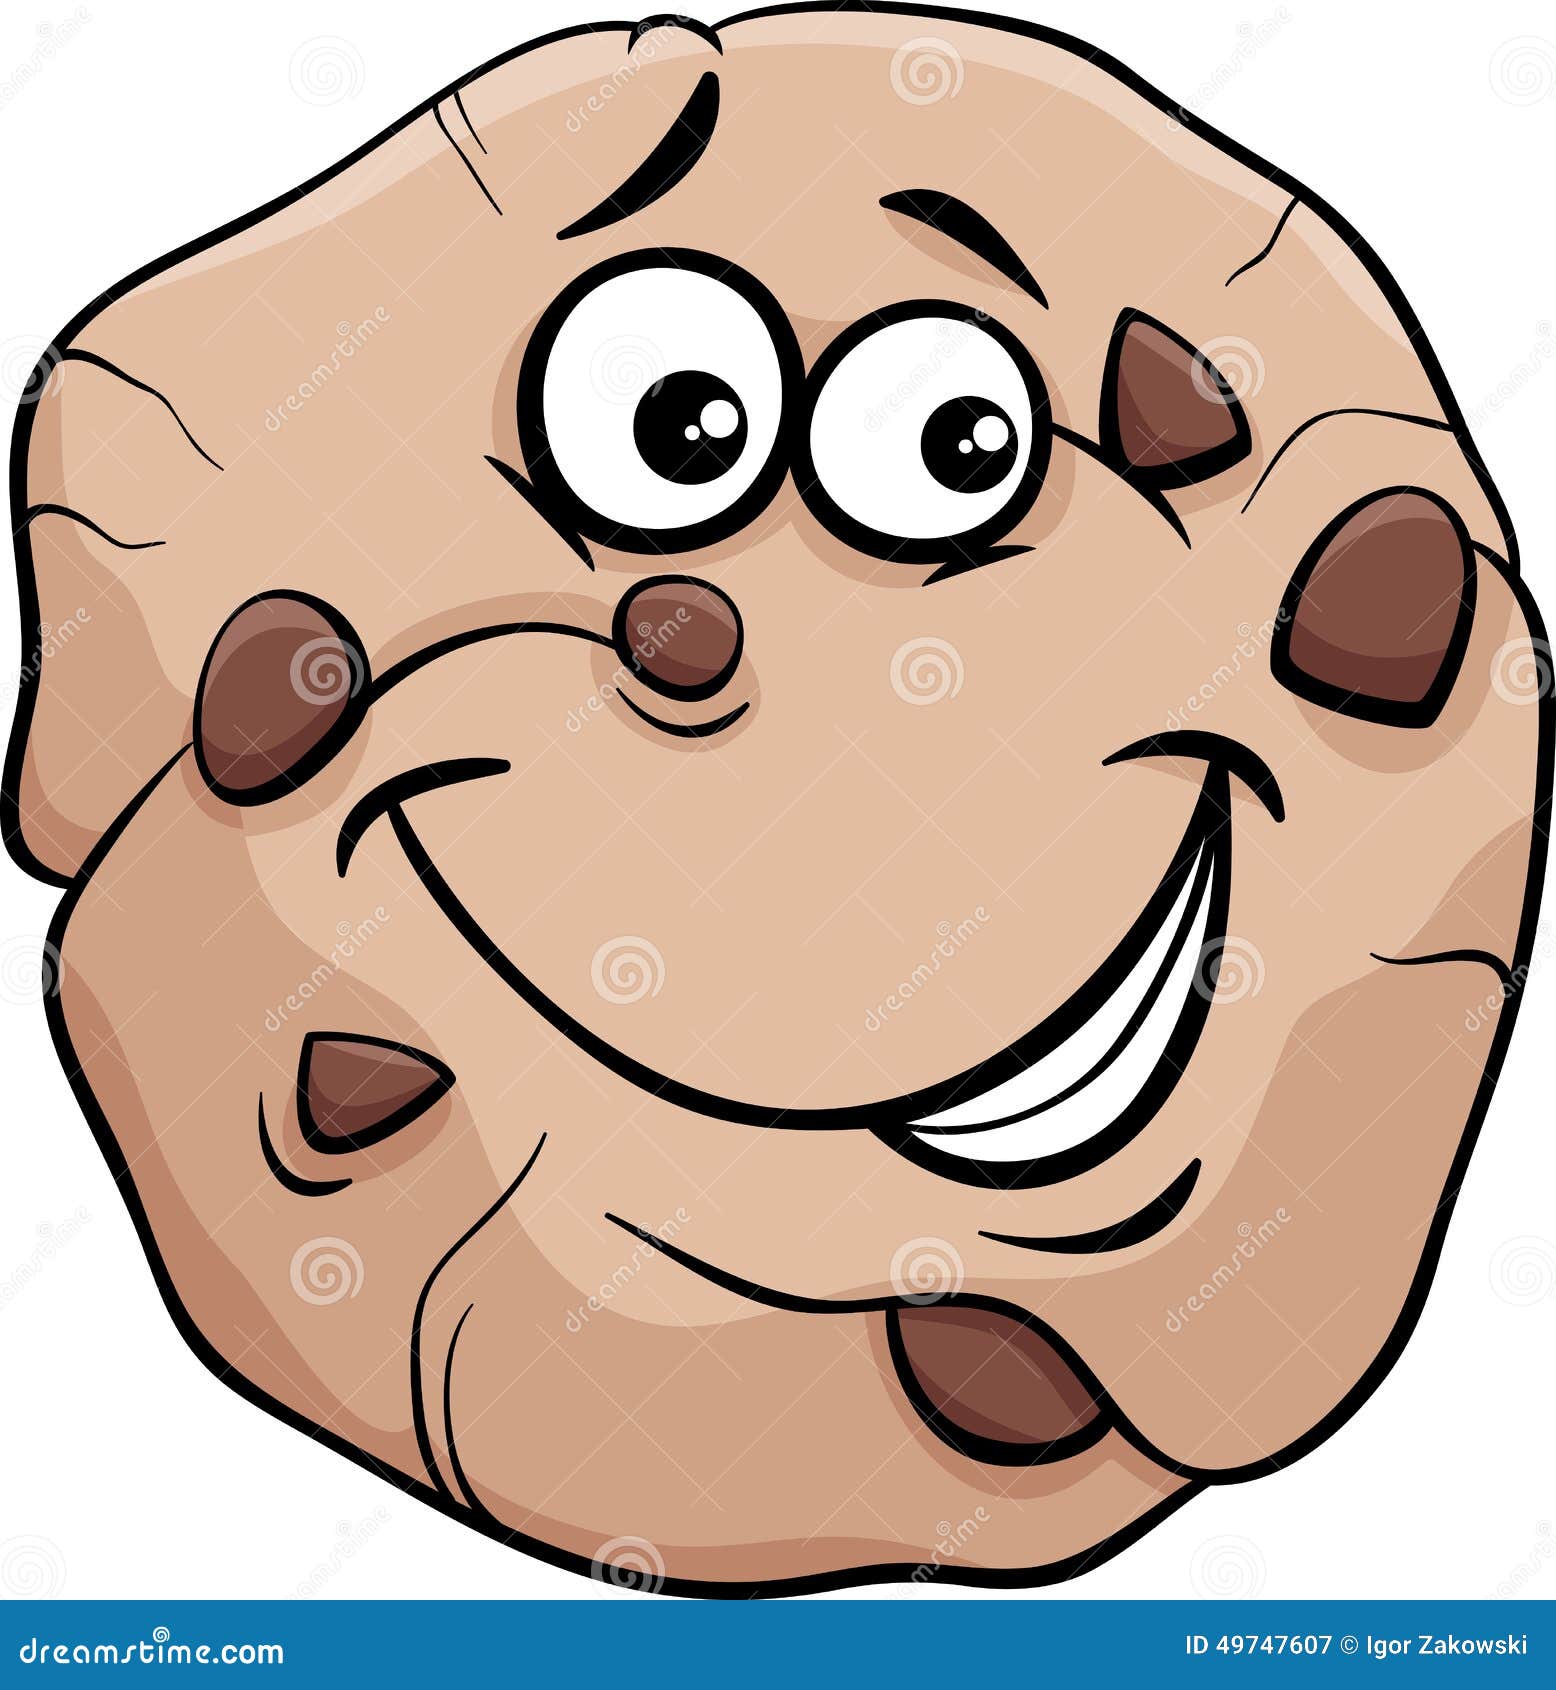 卡通美味饼干矢量素材免费下载 - 觅知网